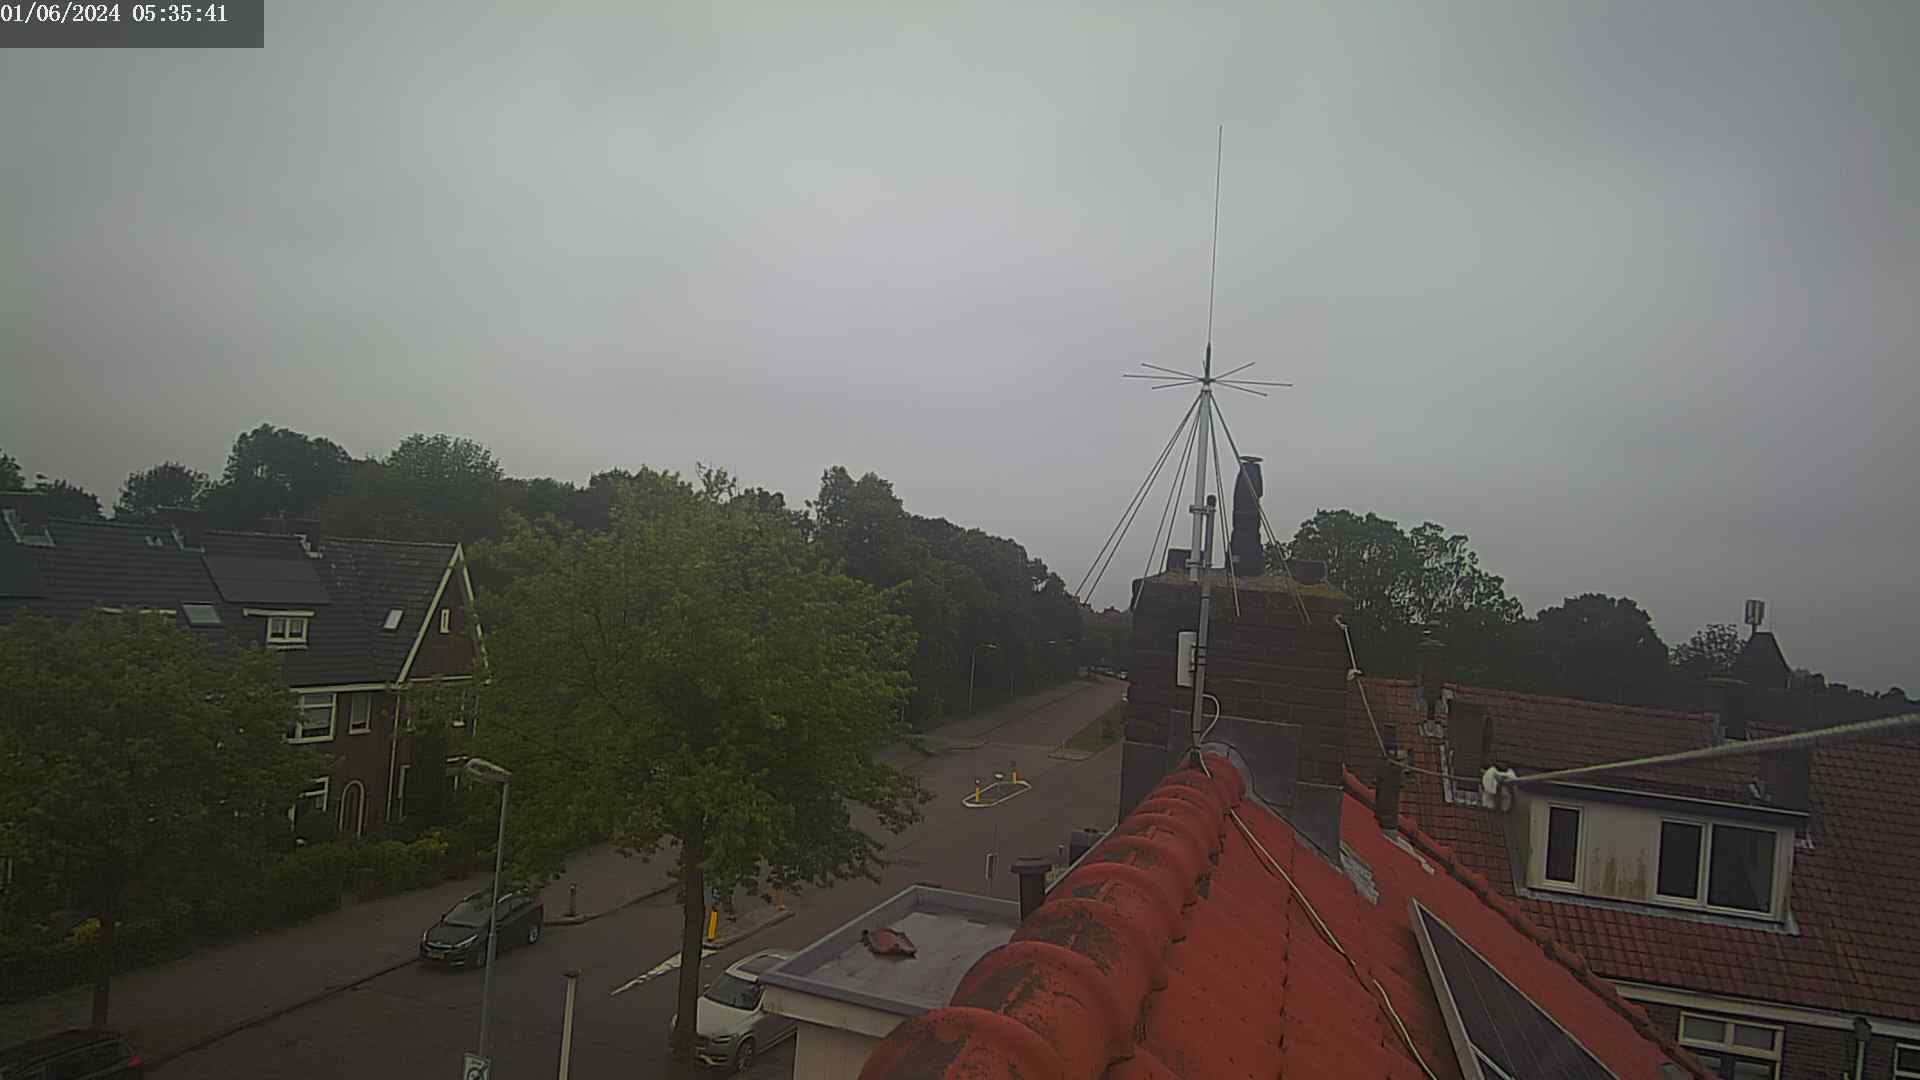 Haarlem Mi. 06:35